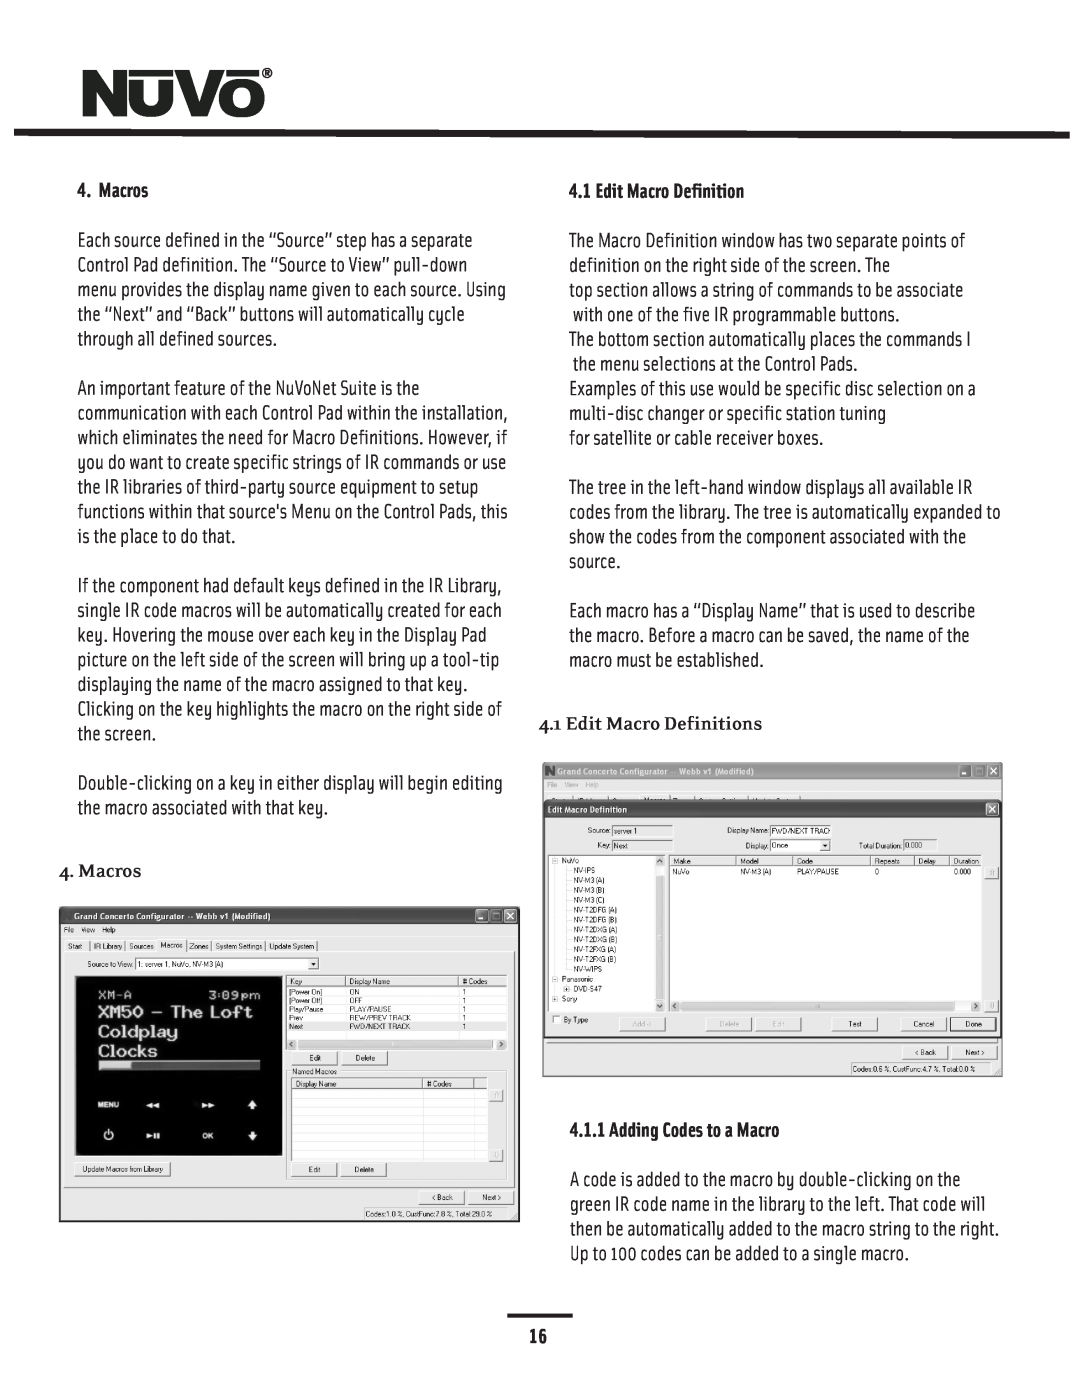 Nuvo NV-I8GMS, NV-I8GXS manual Macros, Edit Macro Definitions, Adding Codes to a Macro 